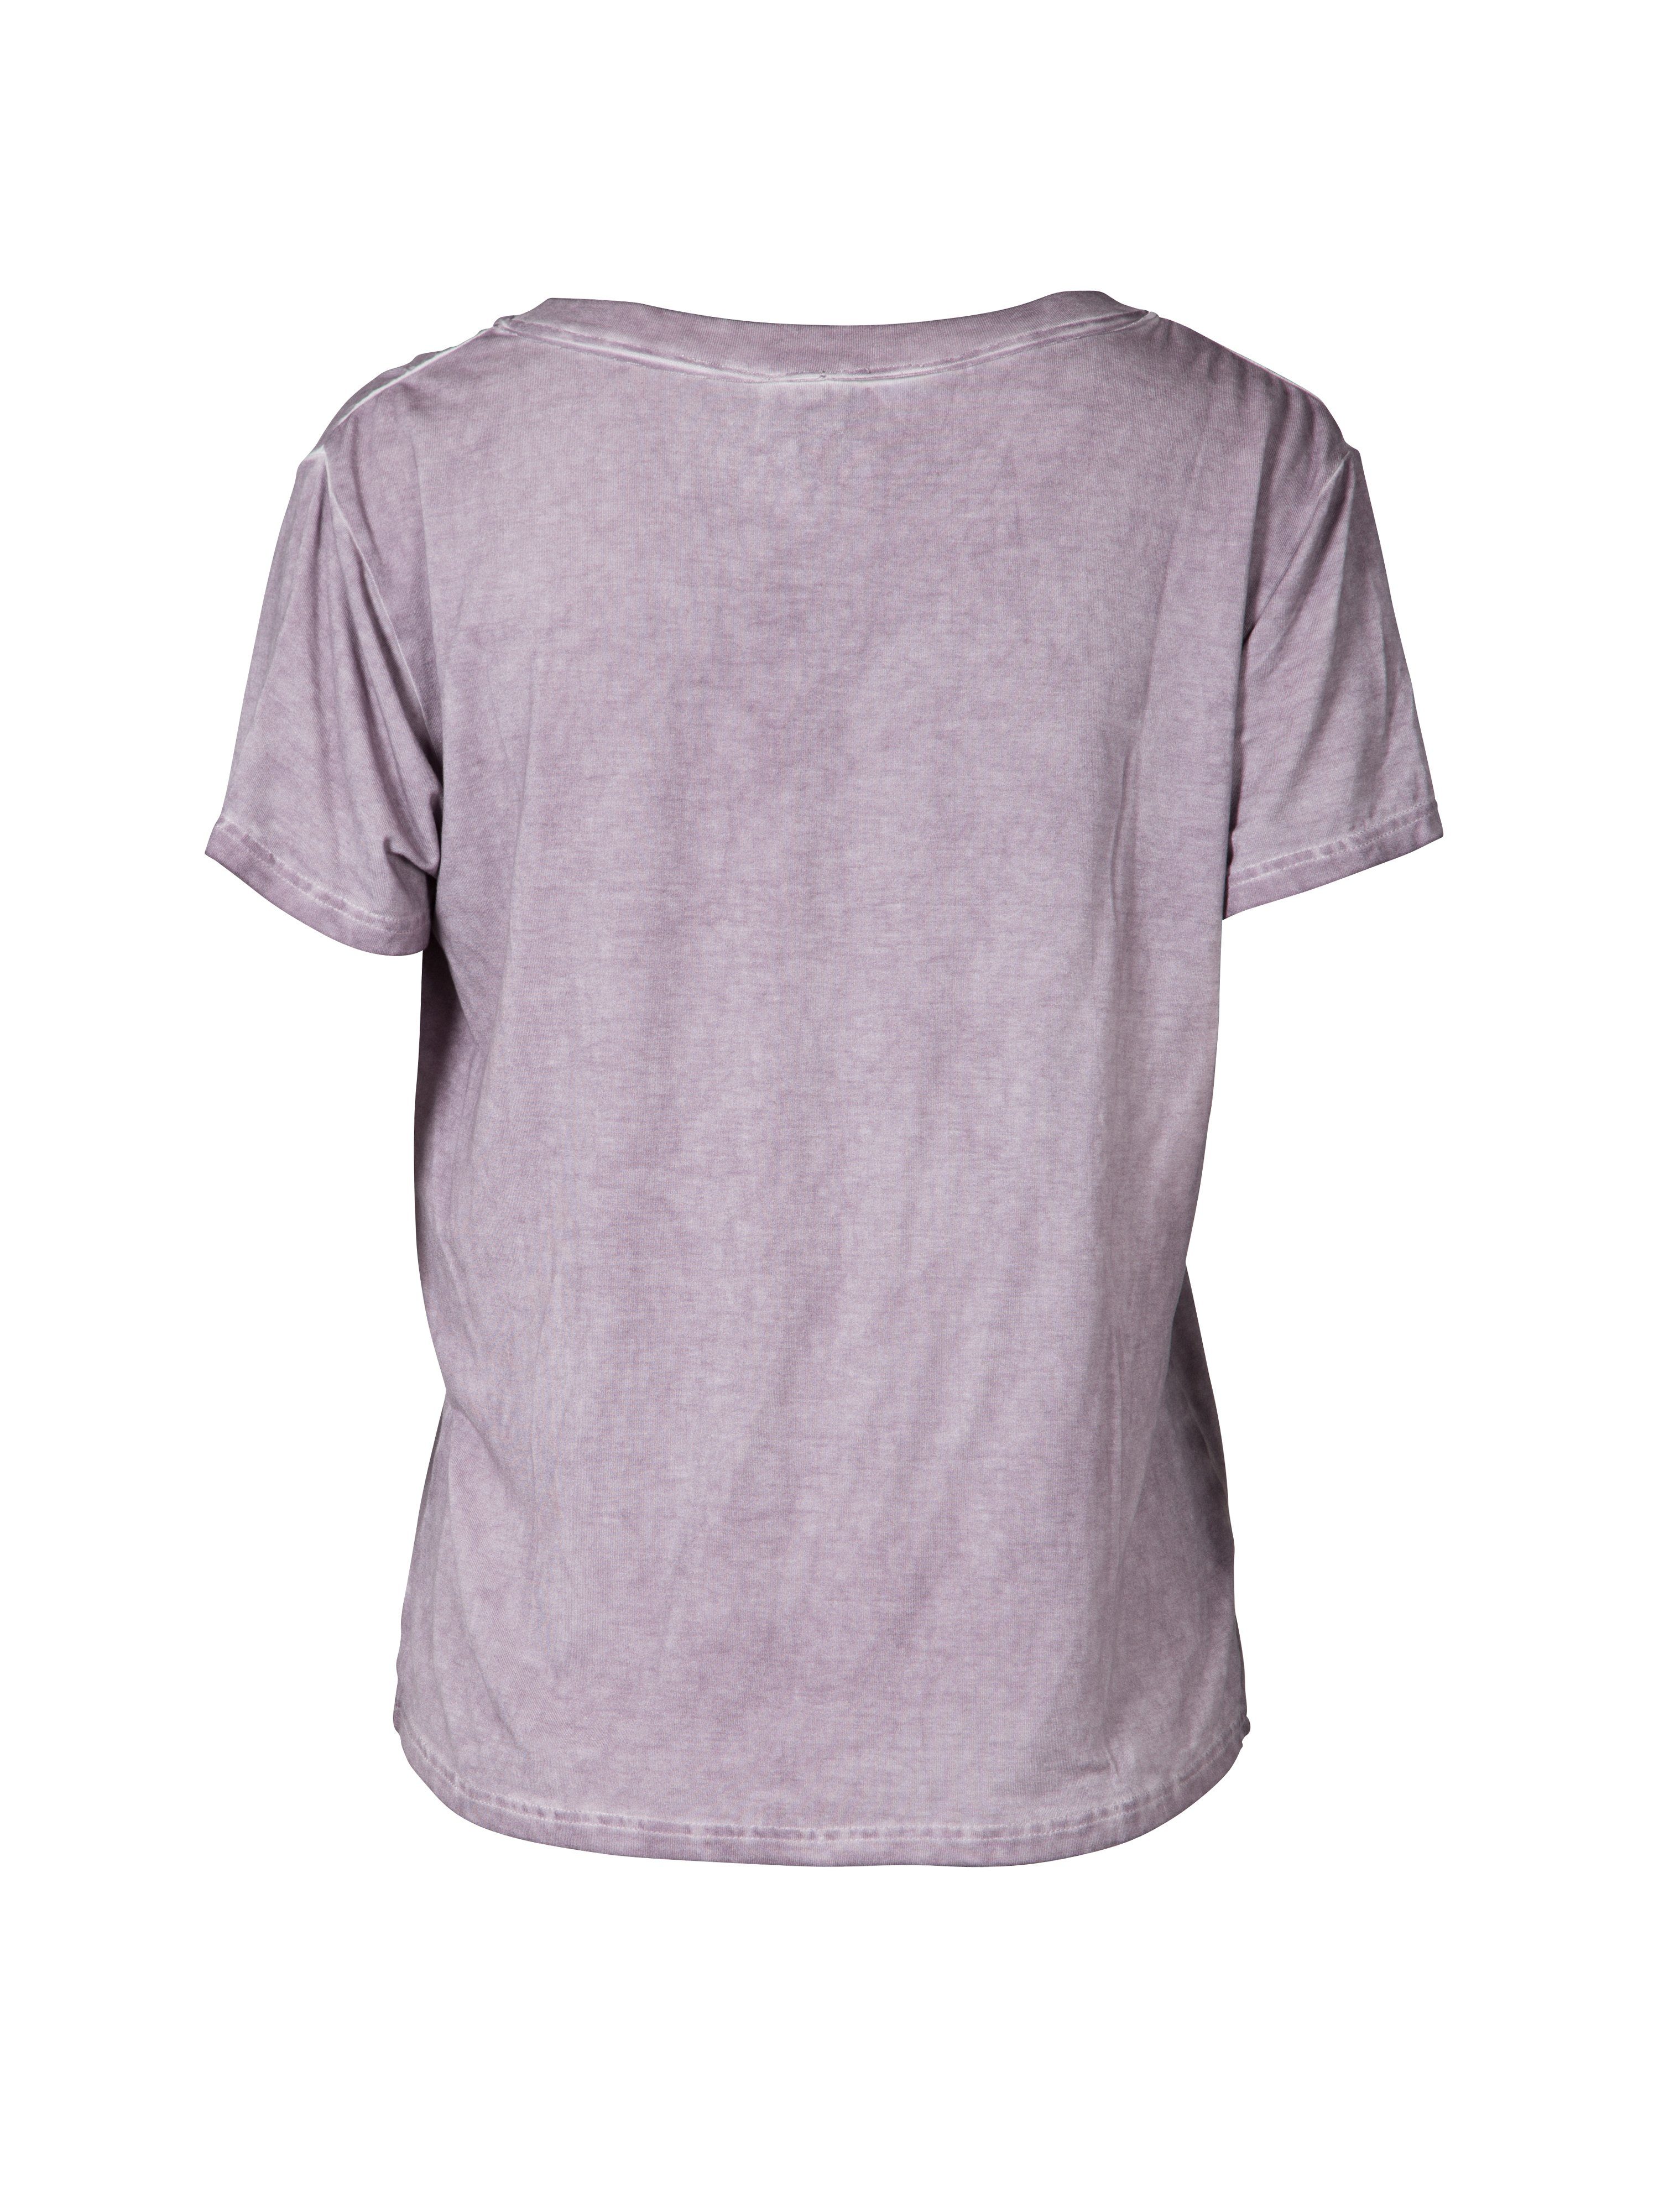 T- Shirt NÜ 7565-50 DENMARK mist Denmark NÜ pink T-Shirt